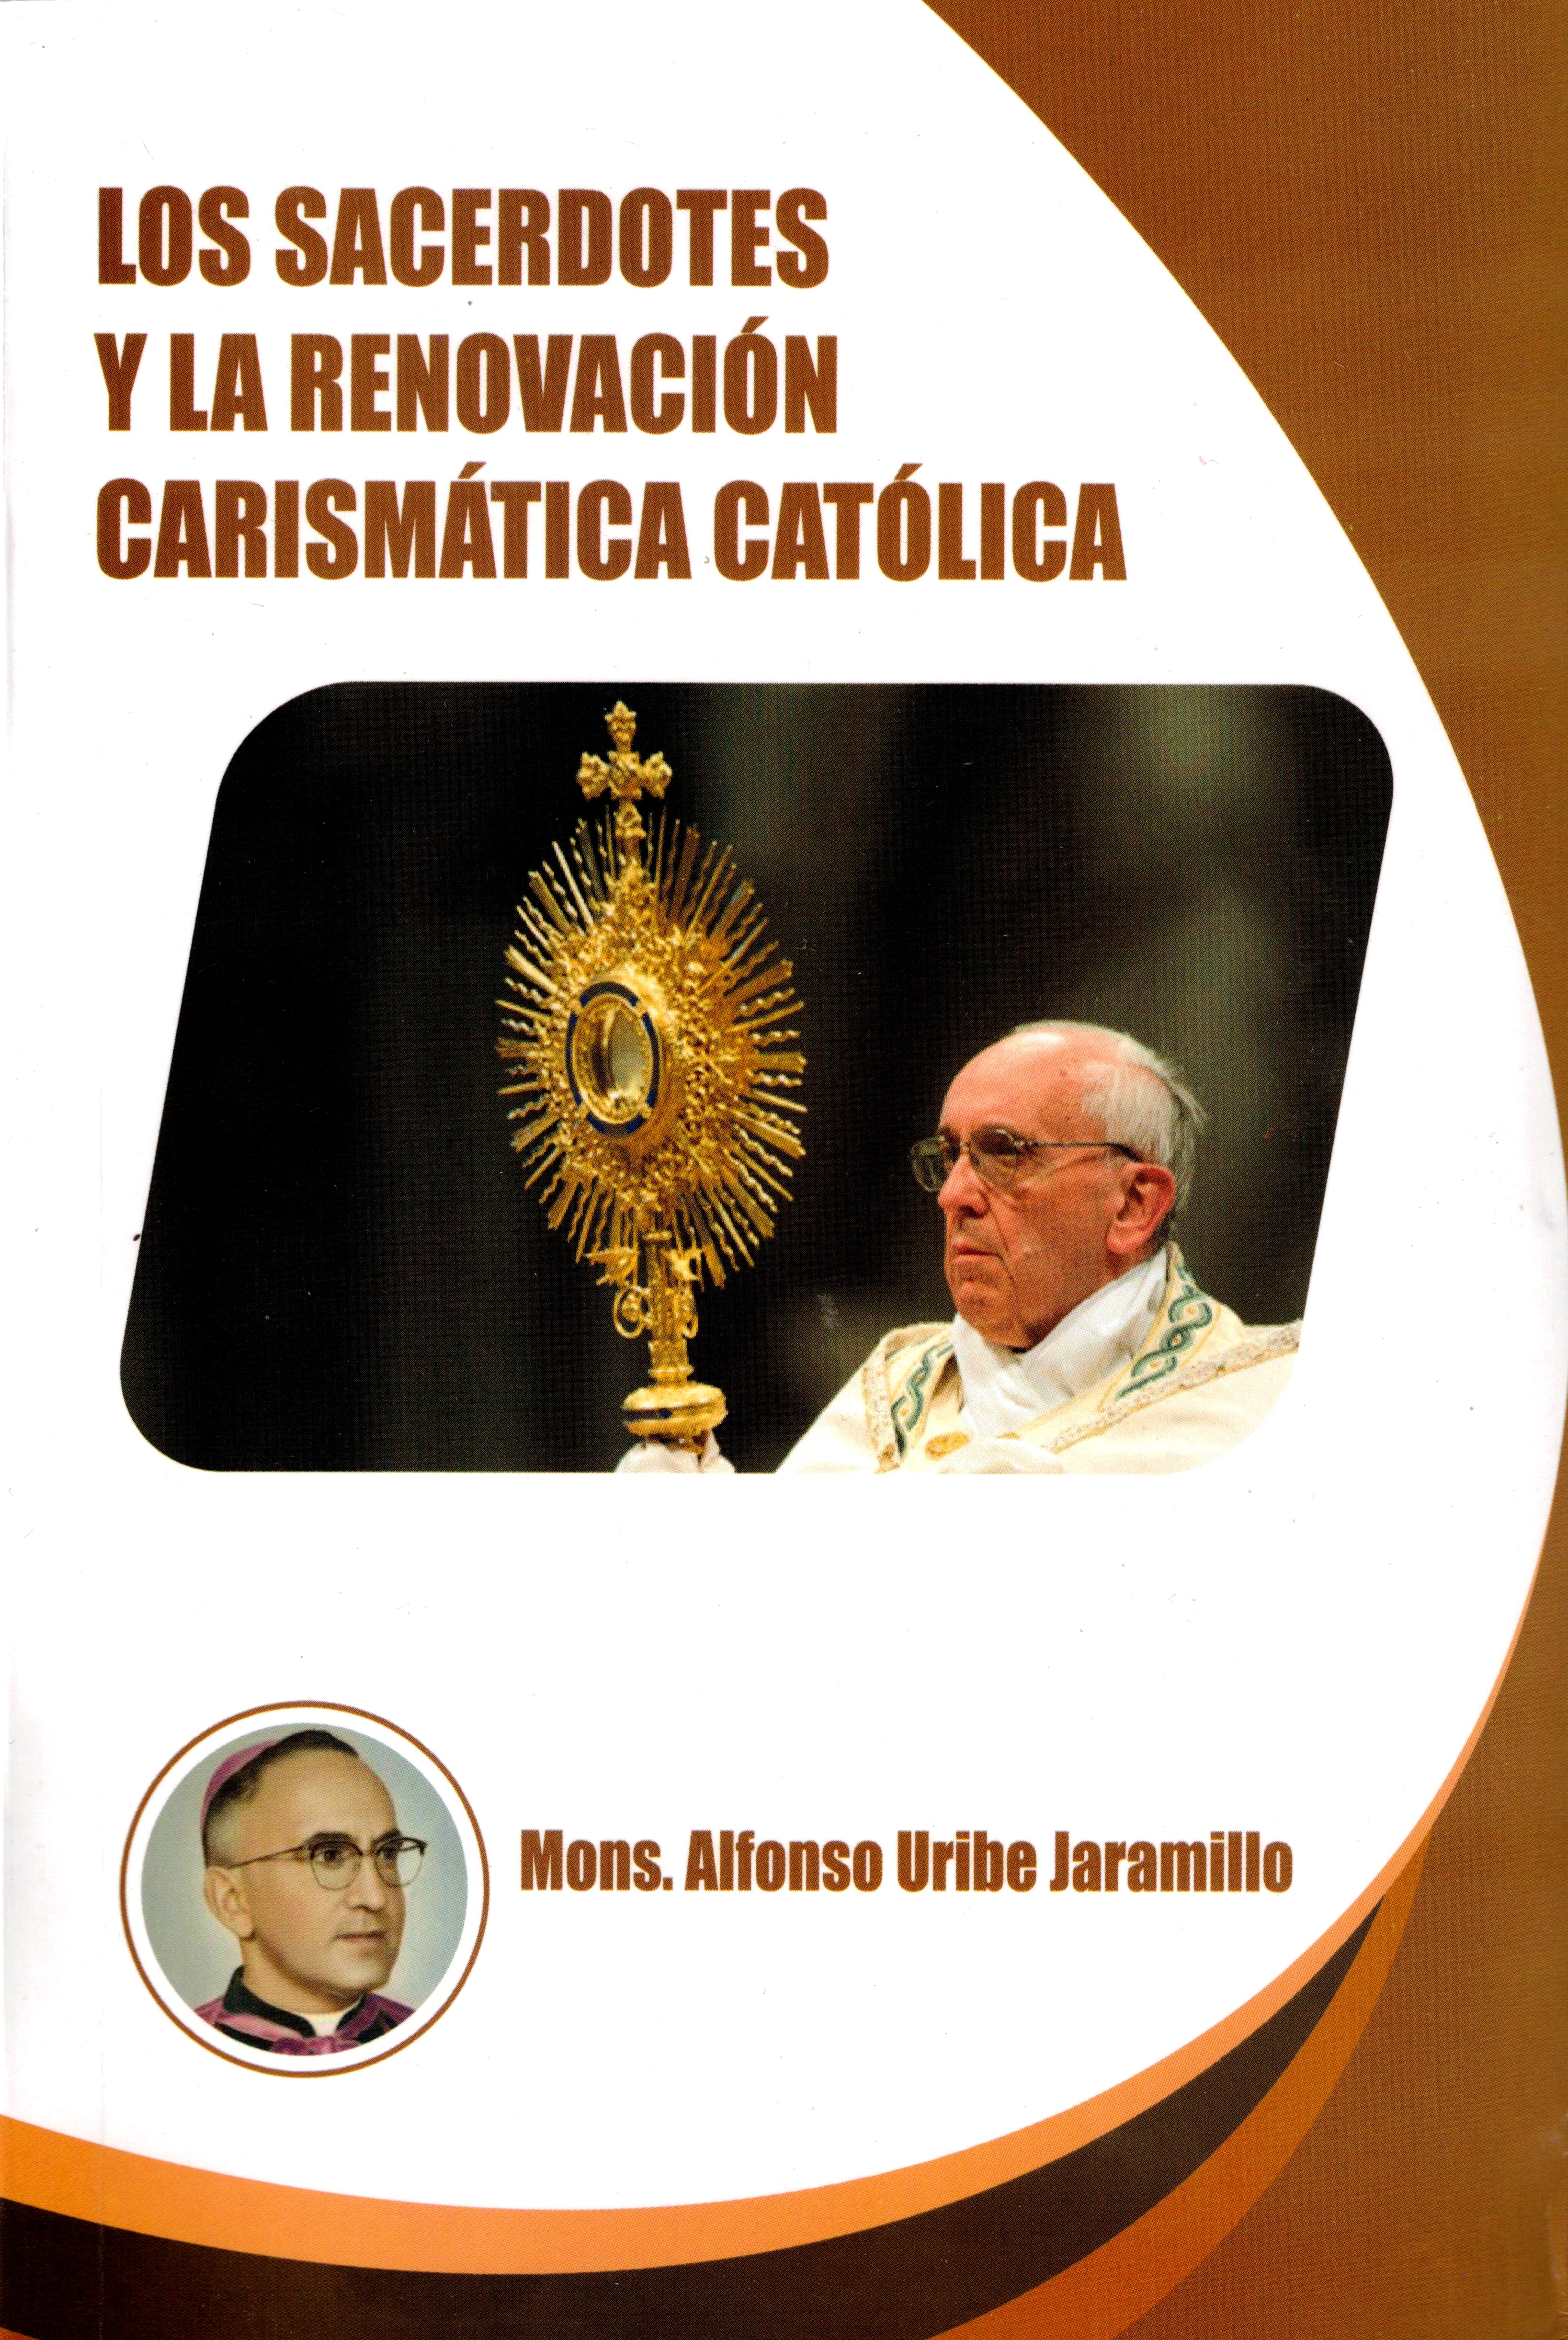 Los sacerdotes y la renovación carismática católica